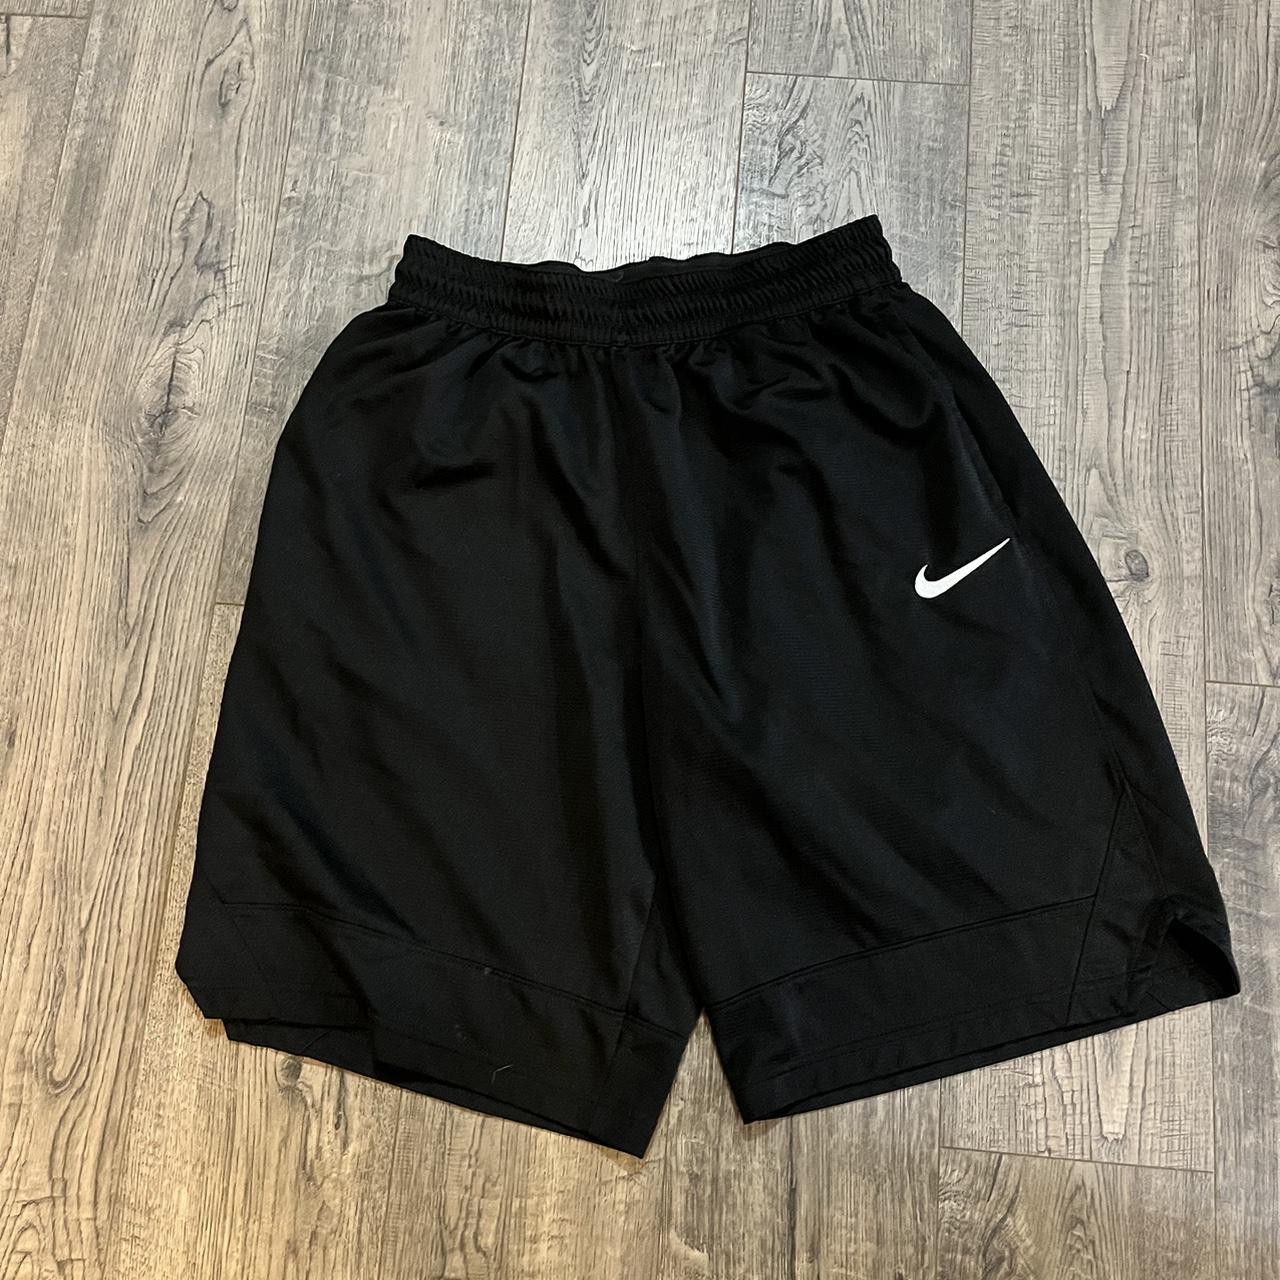 Nike Men's Black Shorts